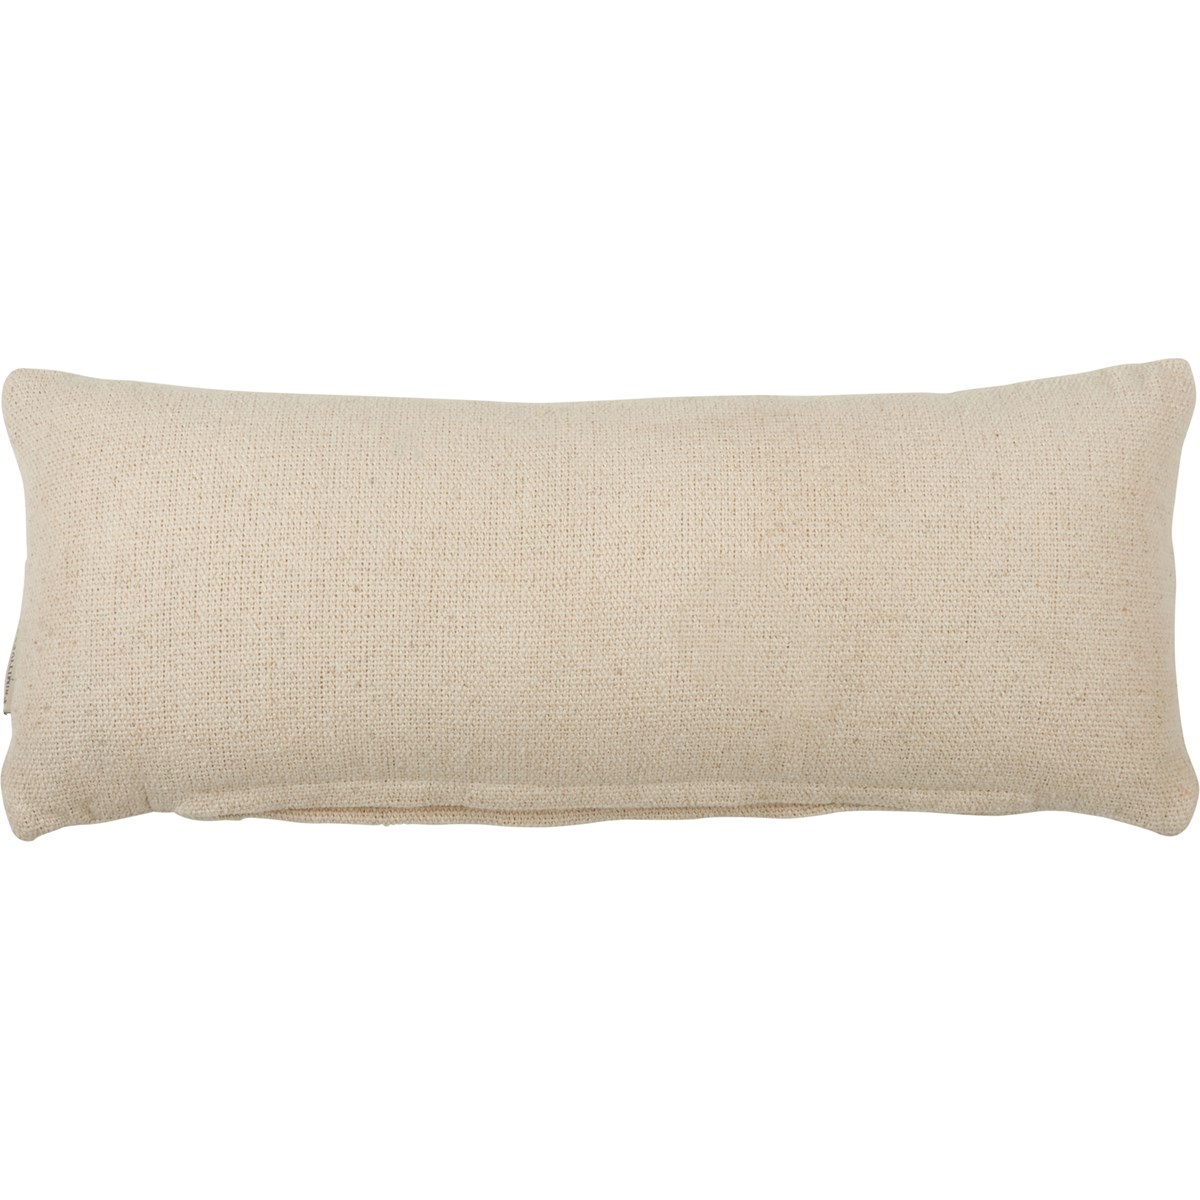 Sperm Whale Pillow - Cotton, Canvas, Zipper